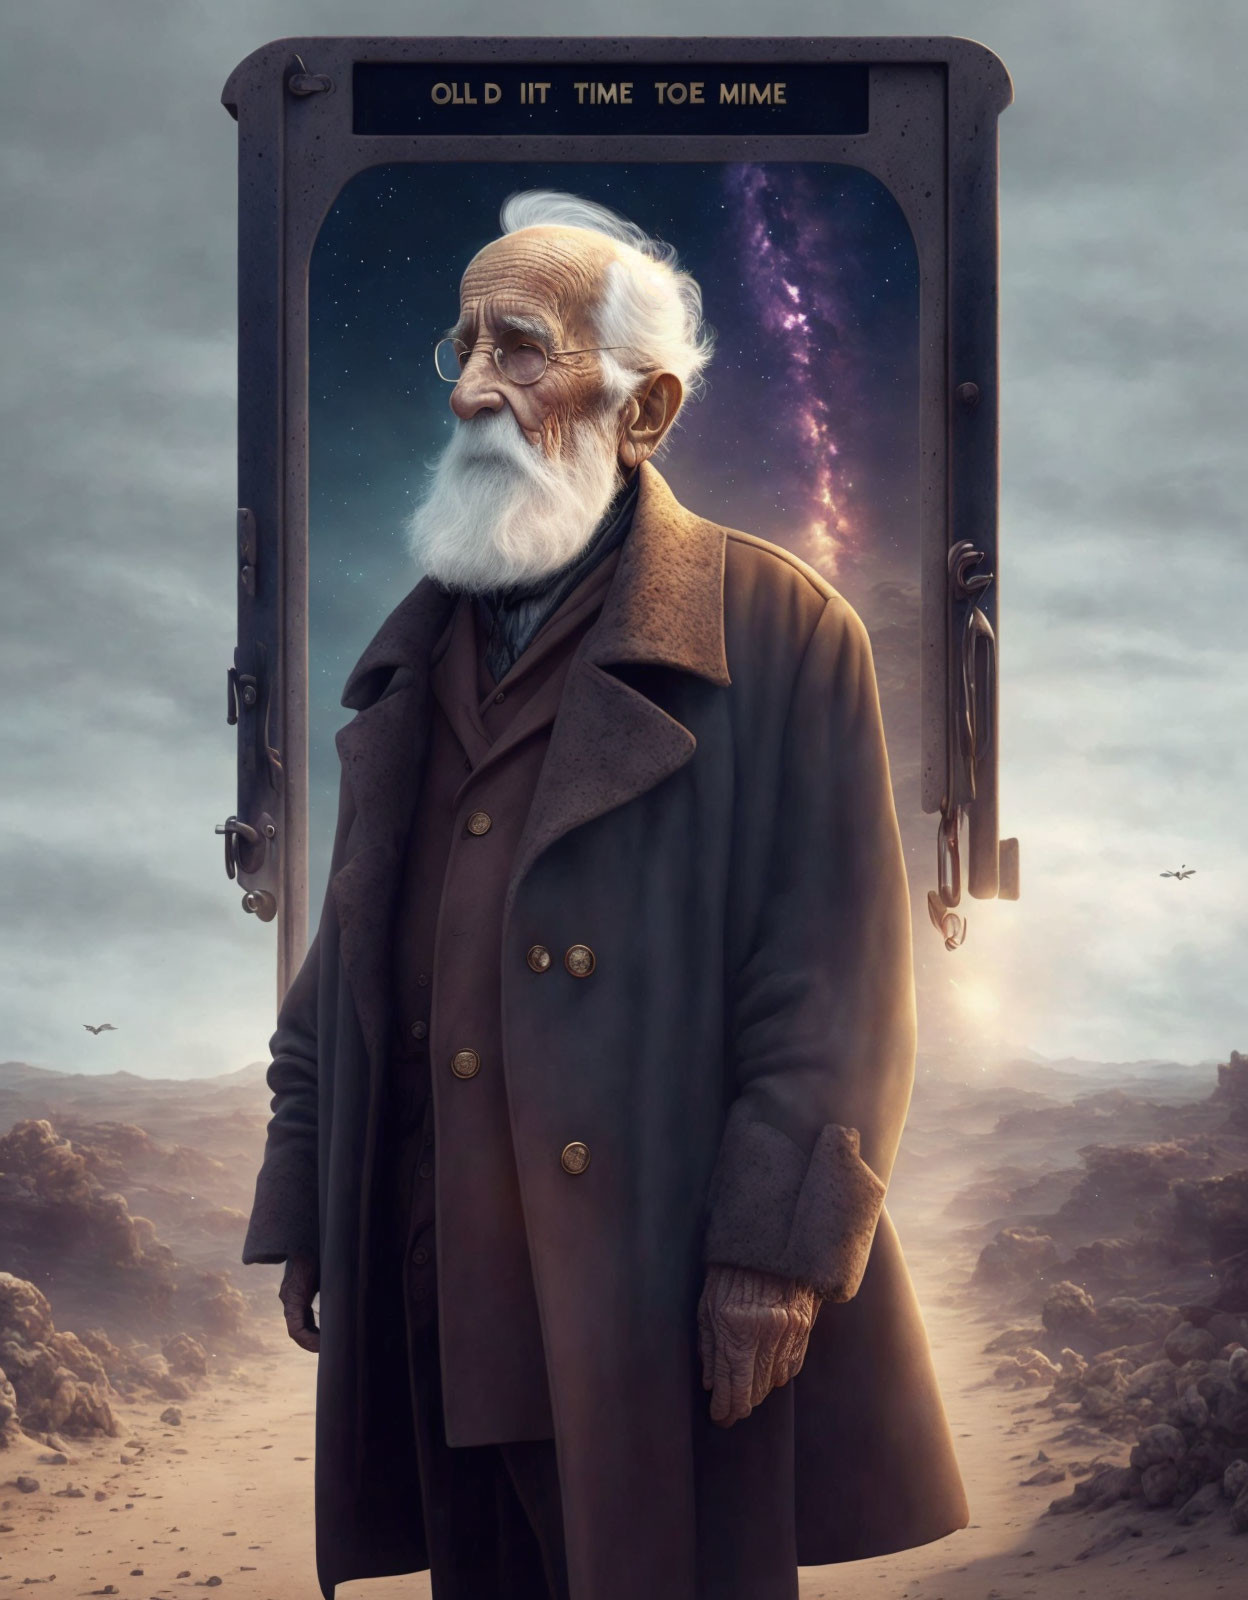 Elderly man with white beard in brown coat by cosmic doorway